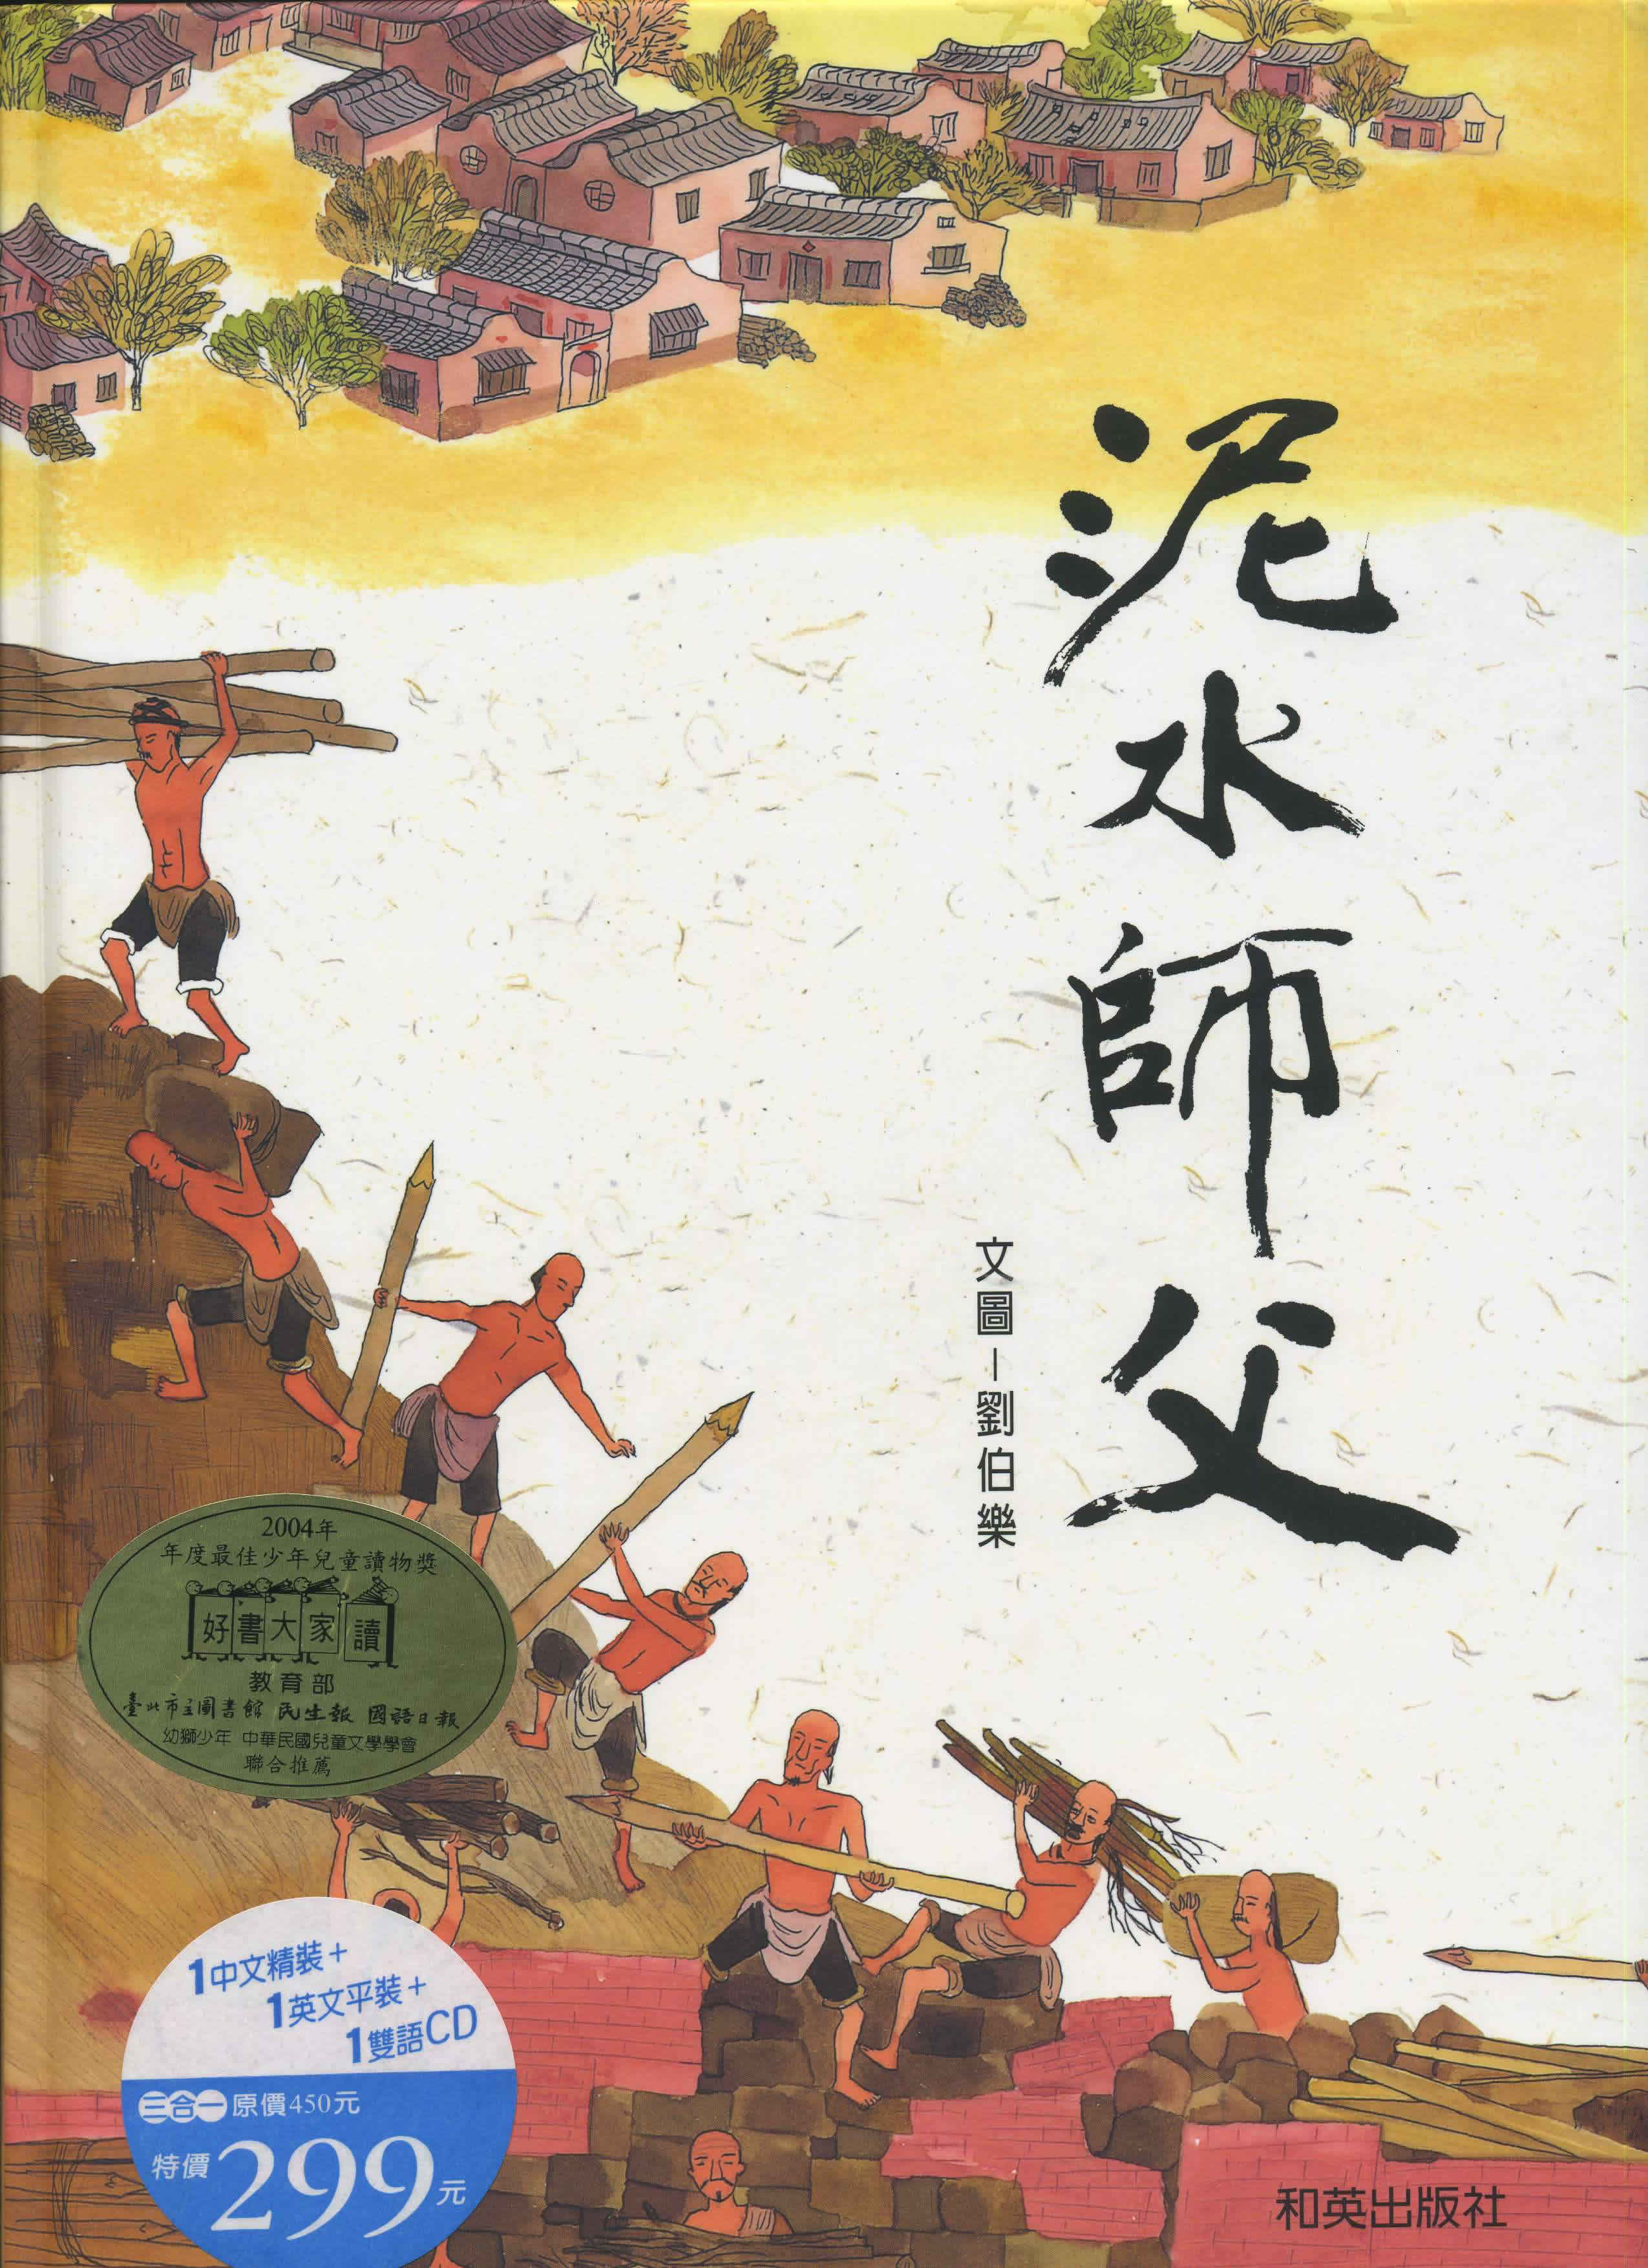 Liu Bole: Nishui Shifu (Master Mason) (zweisprachig Chinesisch-Englisch) (+ CD)<br>ISBN: 986-7942-57-4, 9867942574, 9-789867-942579, 9789867942579